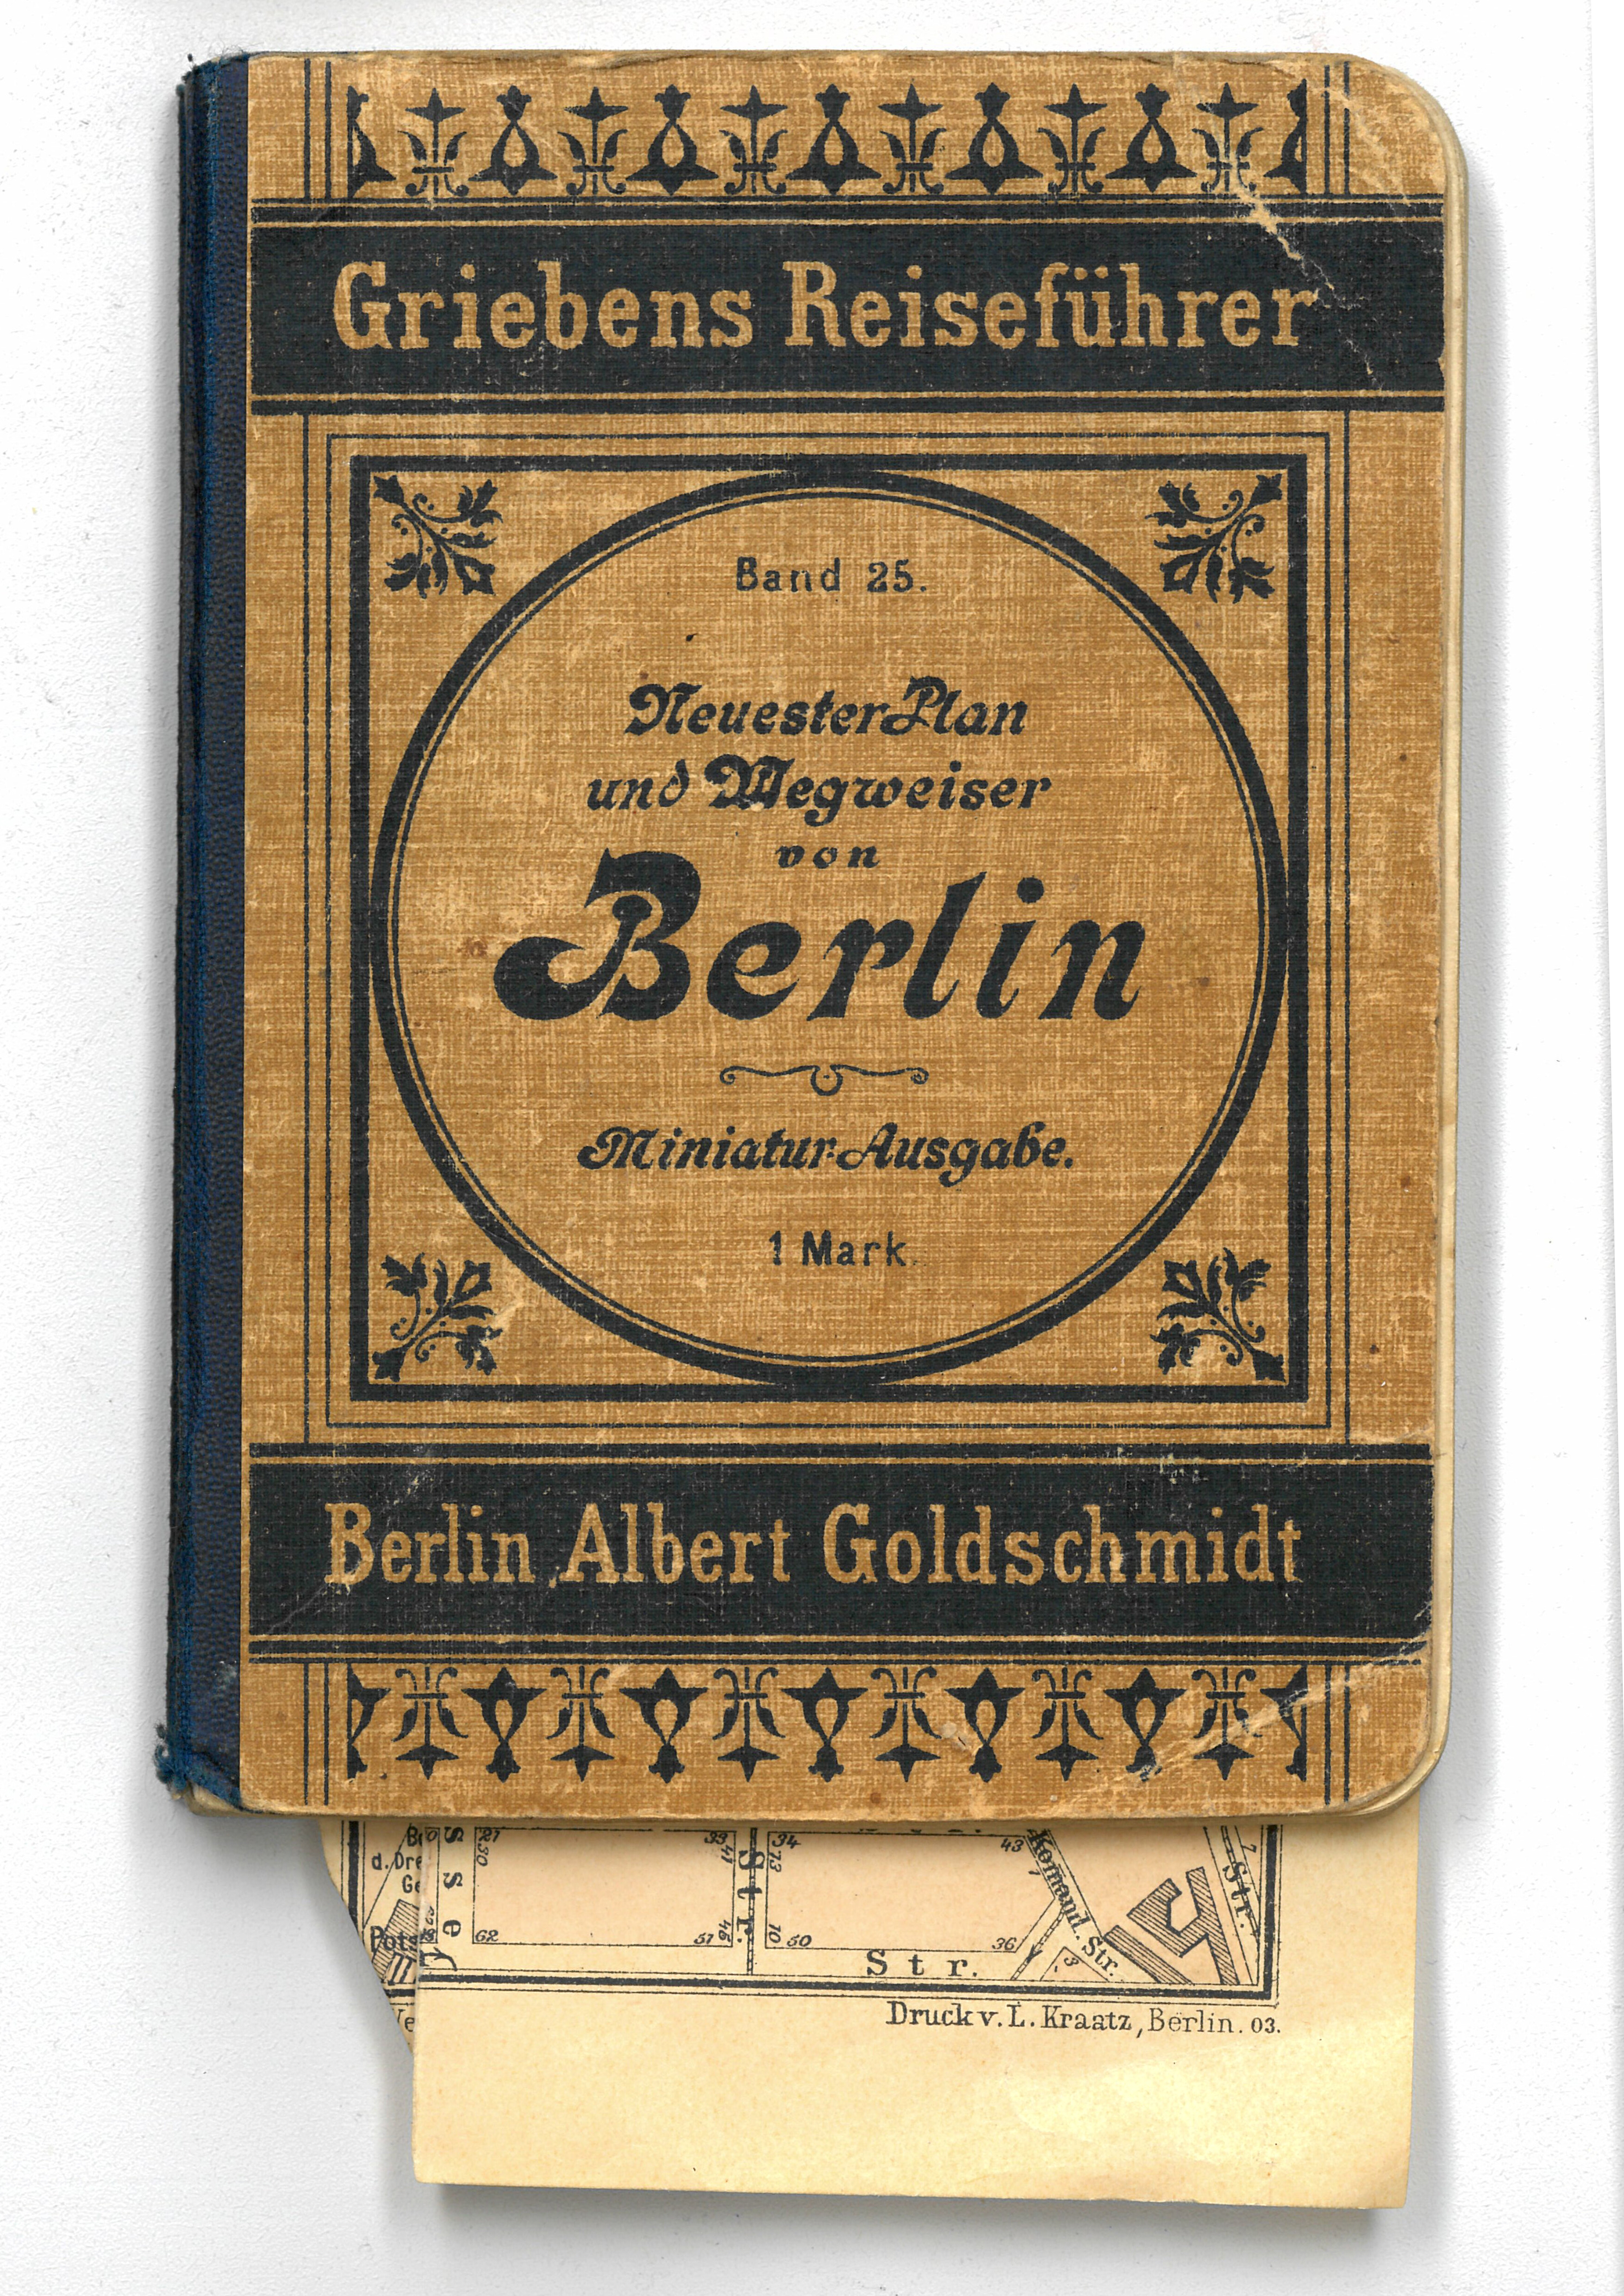 Grieben Reiseführer Bd. 25: Neuester Plan und Wegweiser von Berlin. Miniaturausgabe (Deutsch-Russisches Museum Berlin-Karlshorst CC BY-NC-SA)